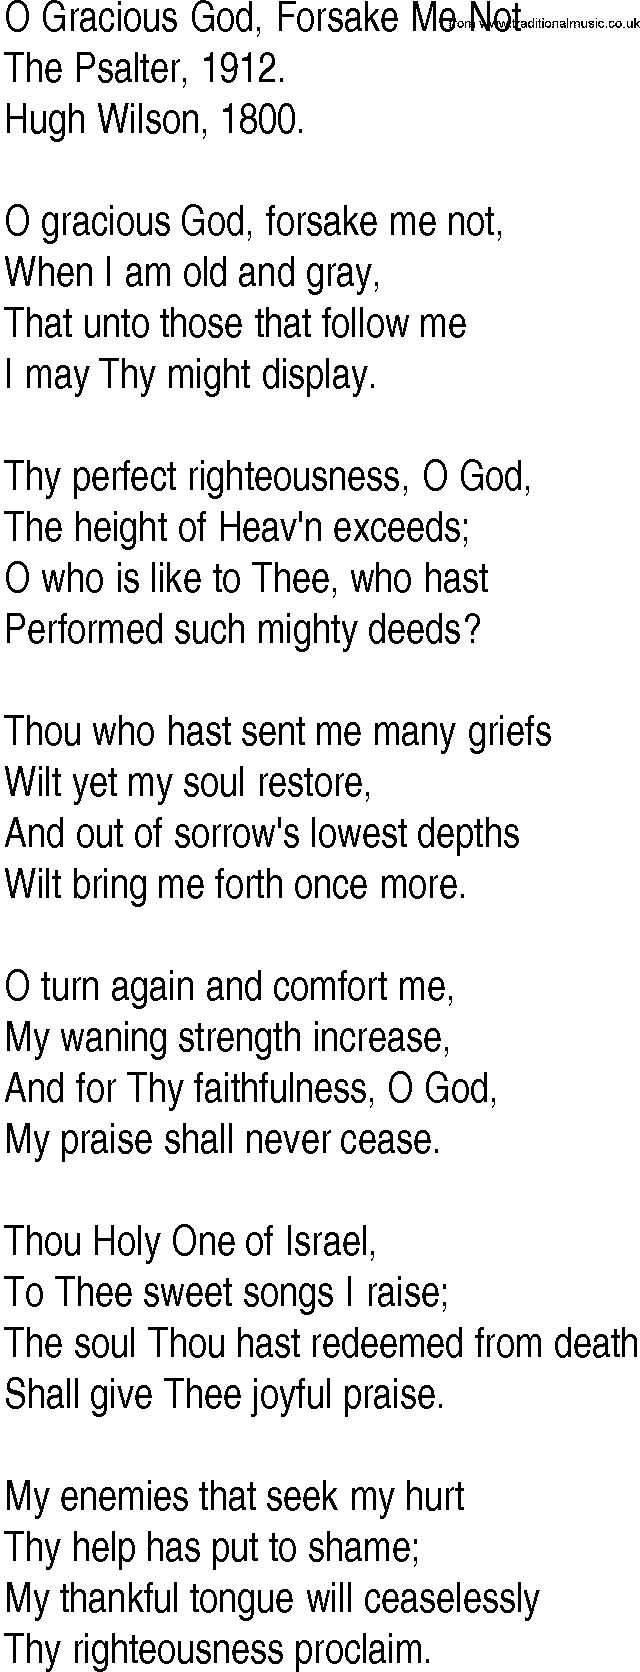 Hymn and Gospel Song: O Gracious God, Forsake Me Not by The Psalter lyrics